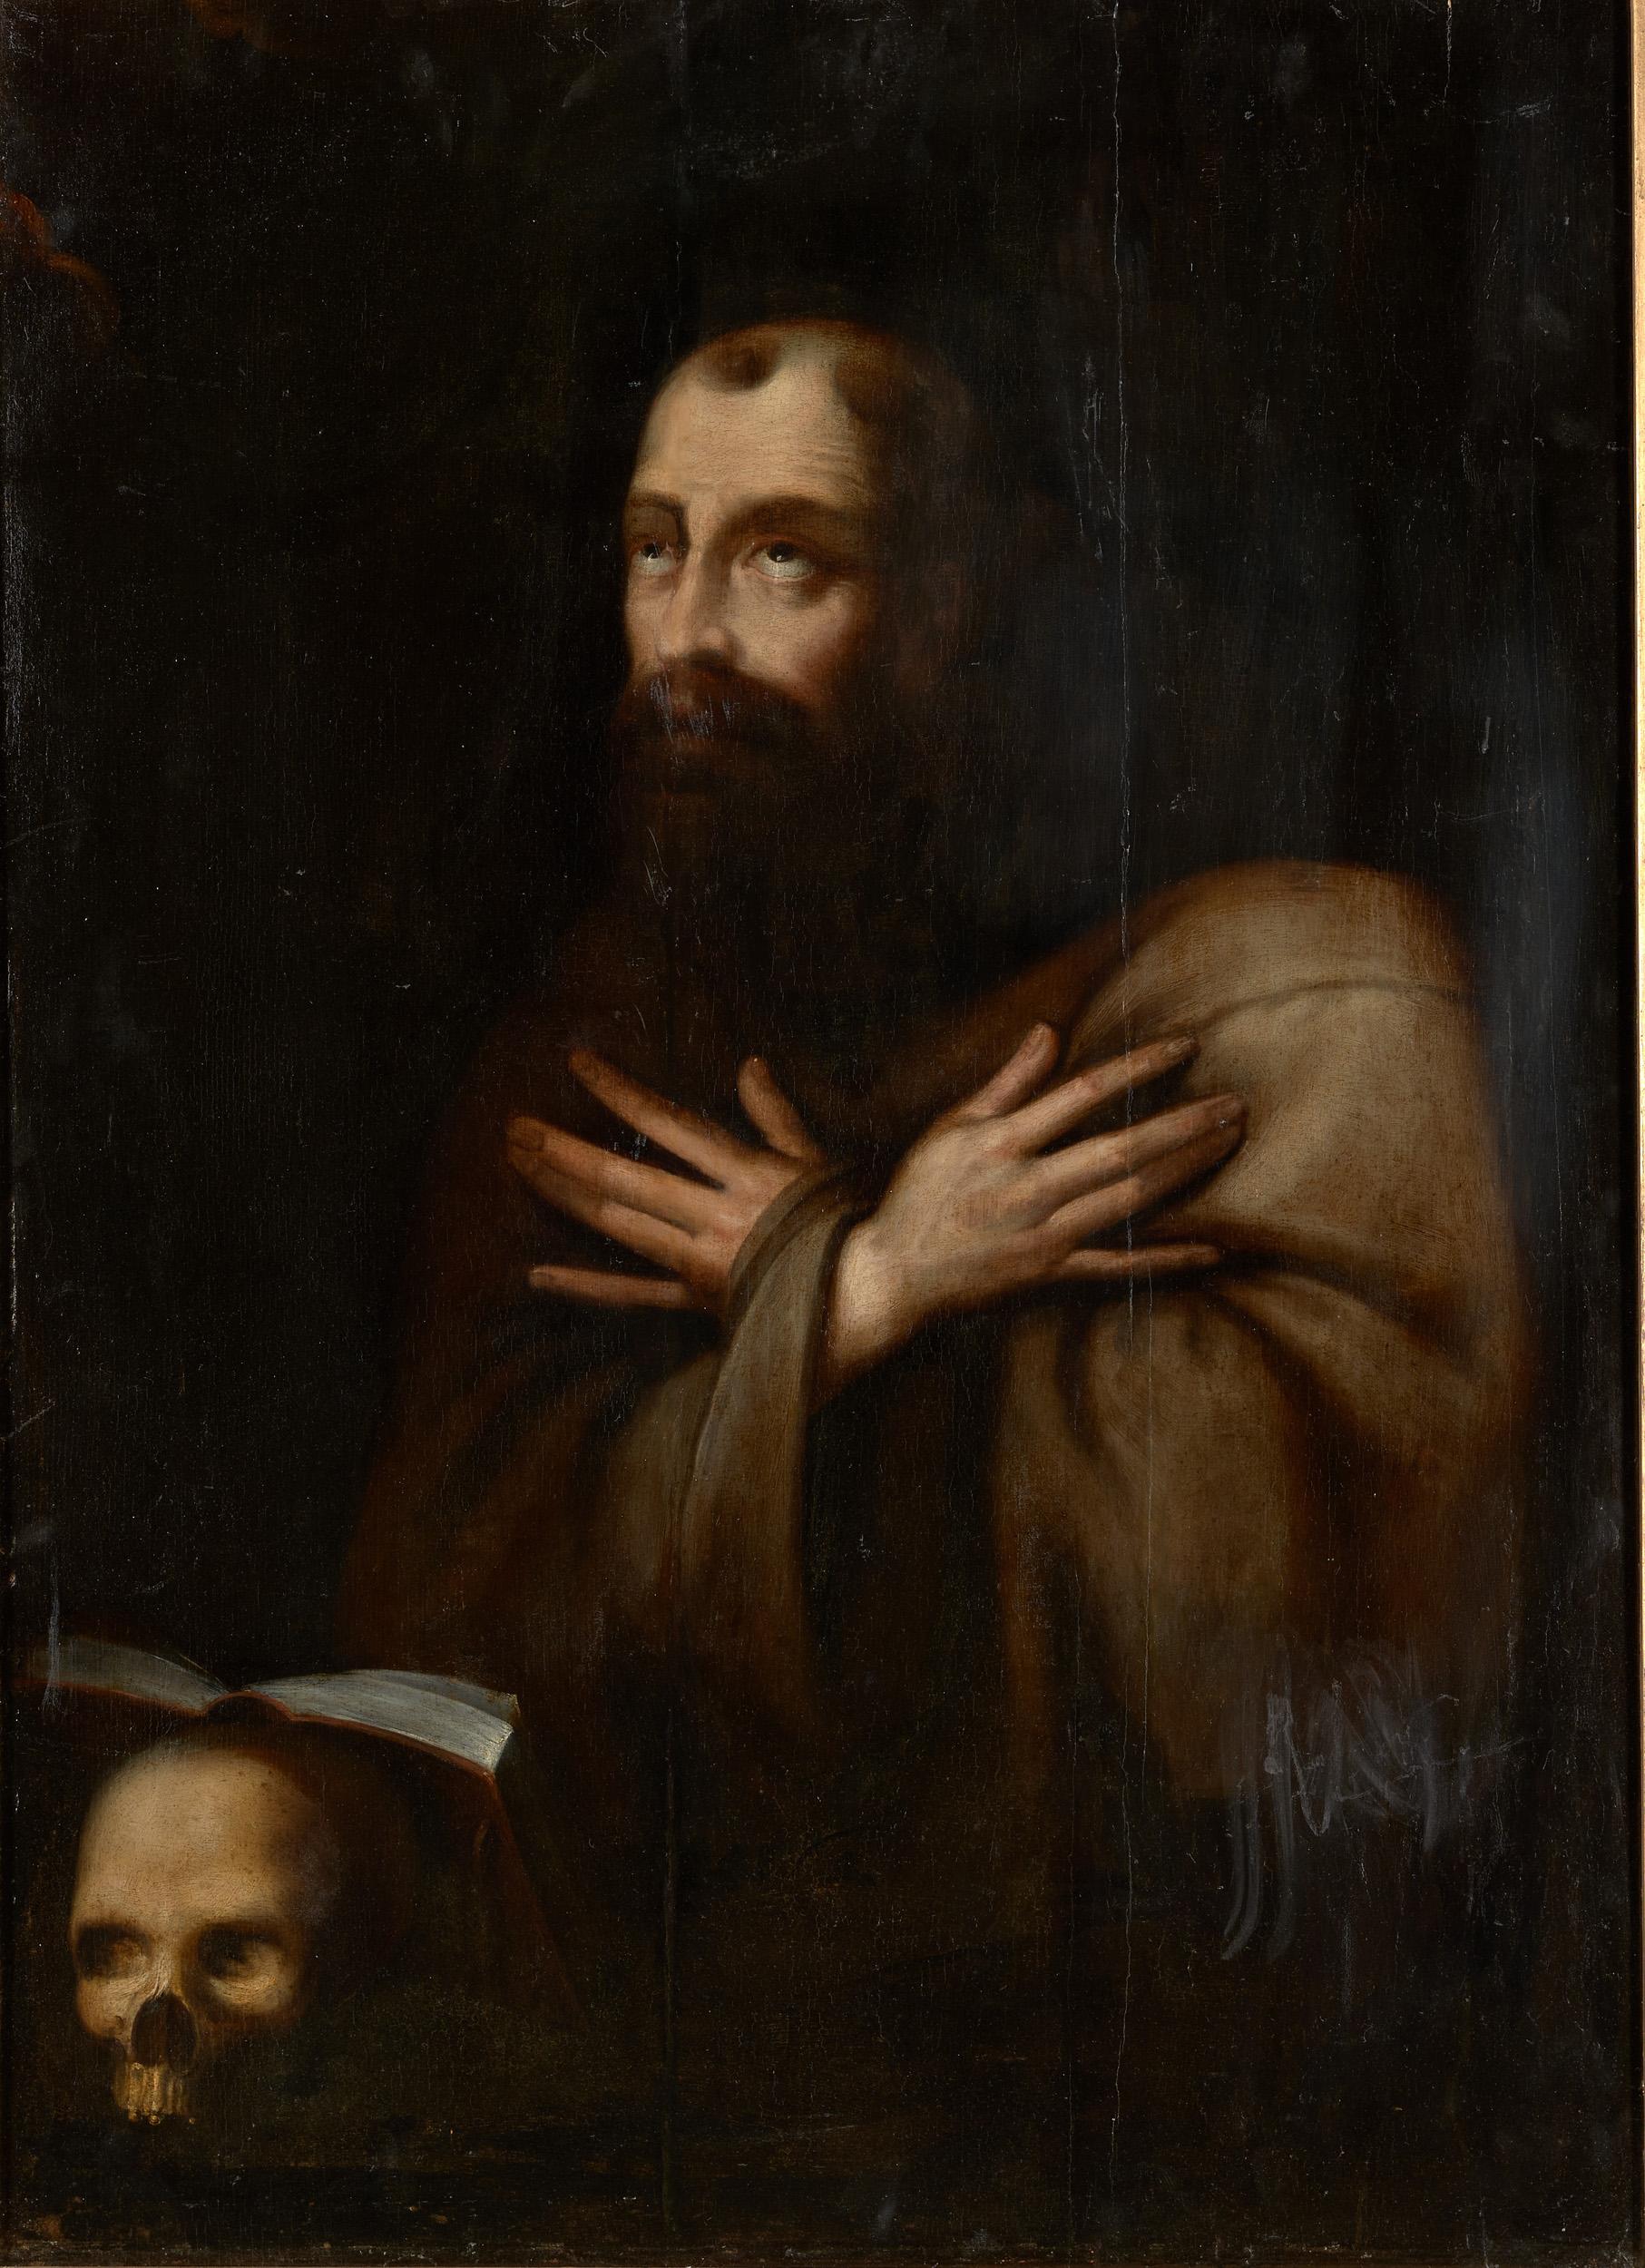 Cette peinture sur panneau du XVIIe siècle représente un moine franciscain en prière, ou saint François. L'habit gris-brun, le crâne et le livre sont les éléments iconographiques qui identifient le moine comme franciscain, ou comme saint François en